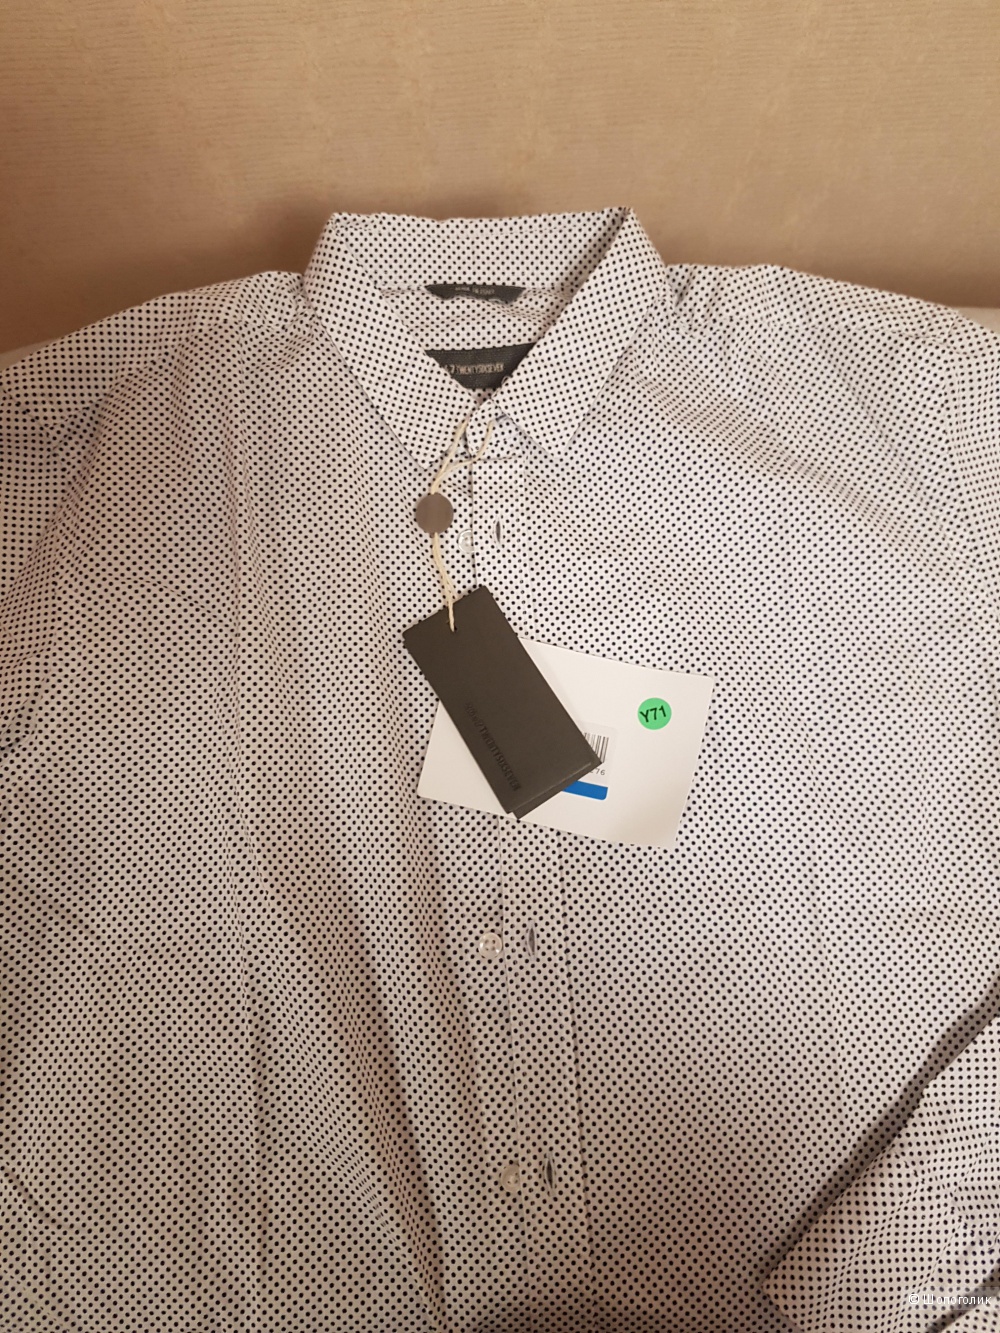 Продам рубашку мужскую размер L,  26.7 TWENTYSIXSEVEN (Италия)